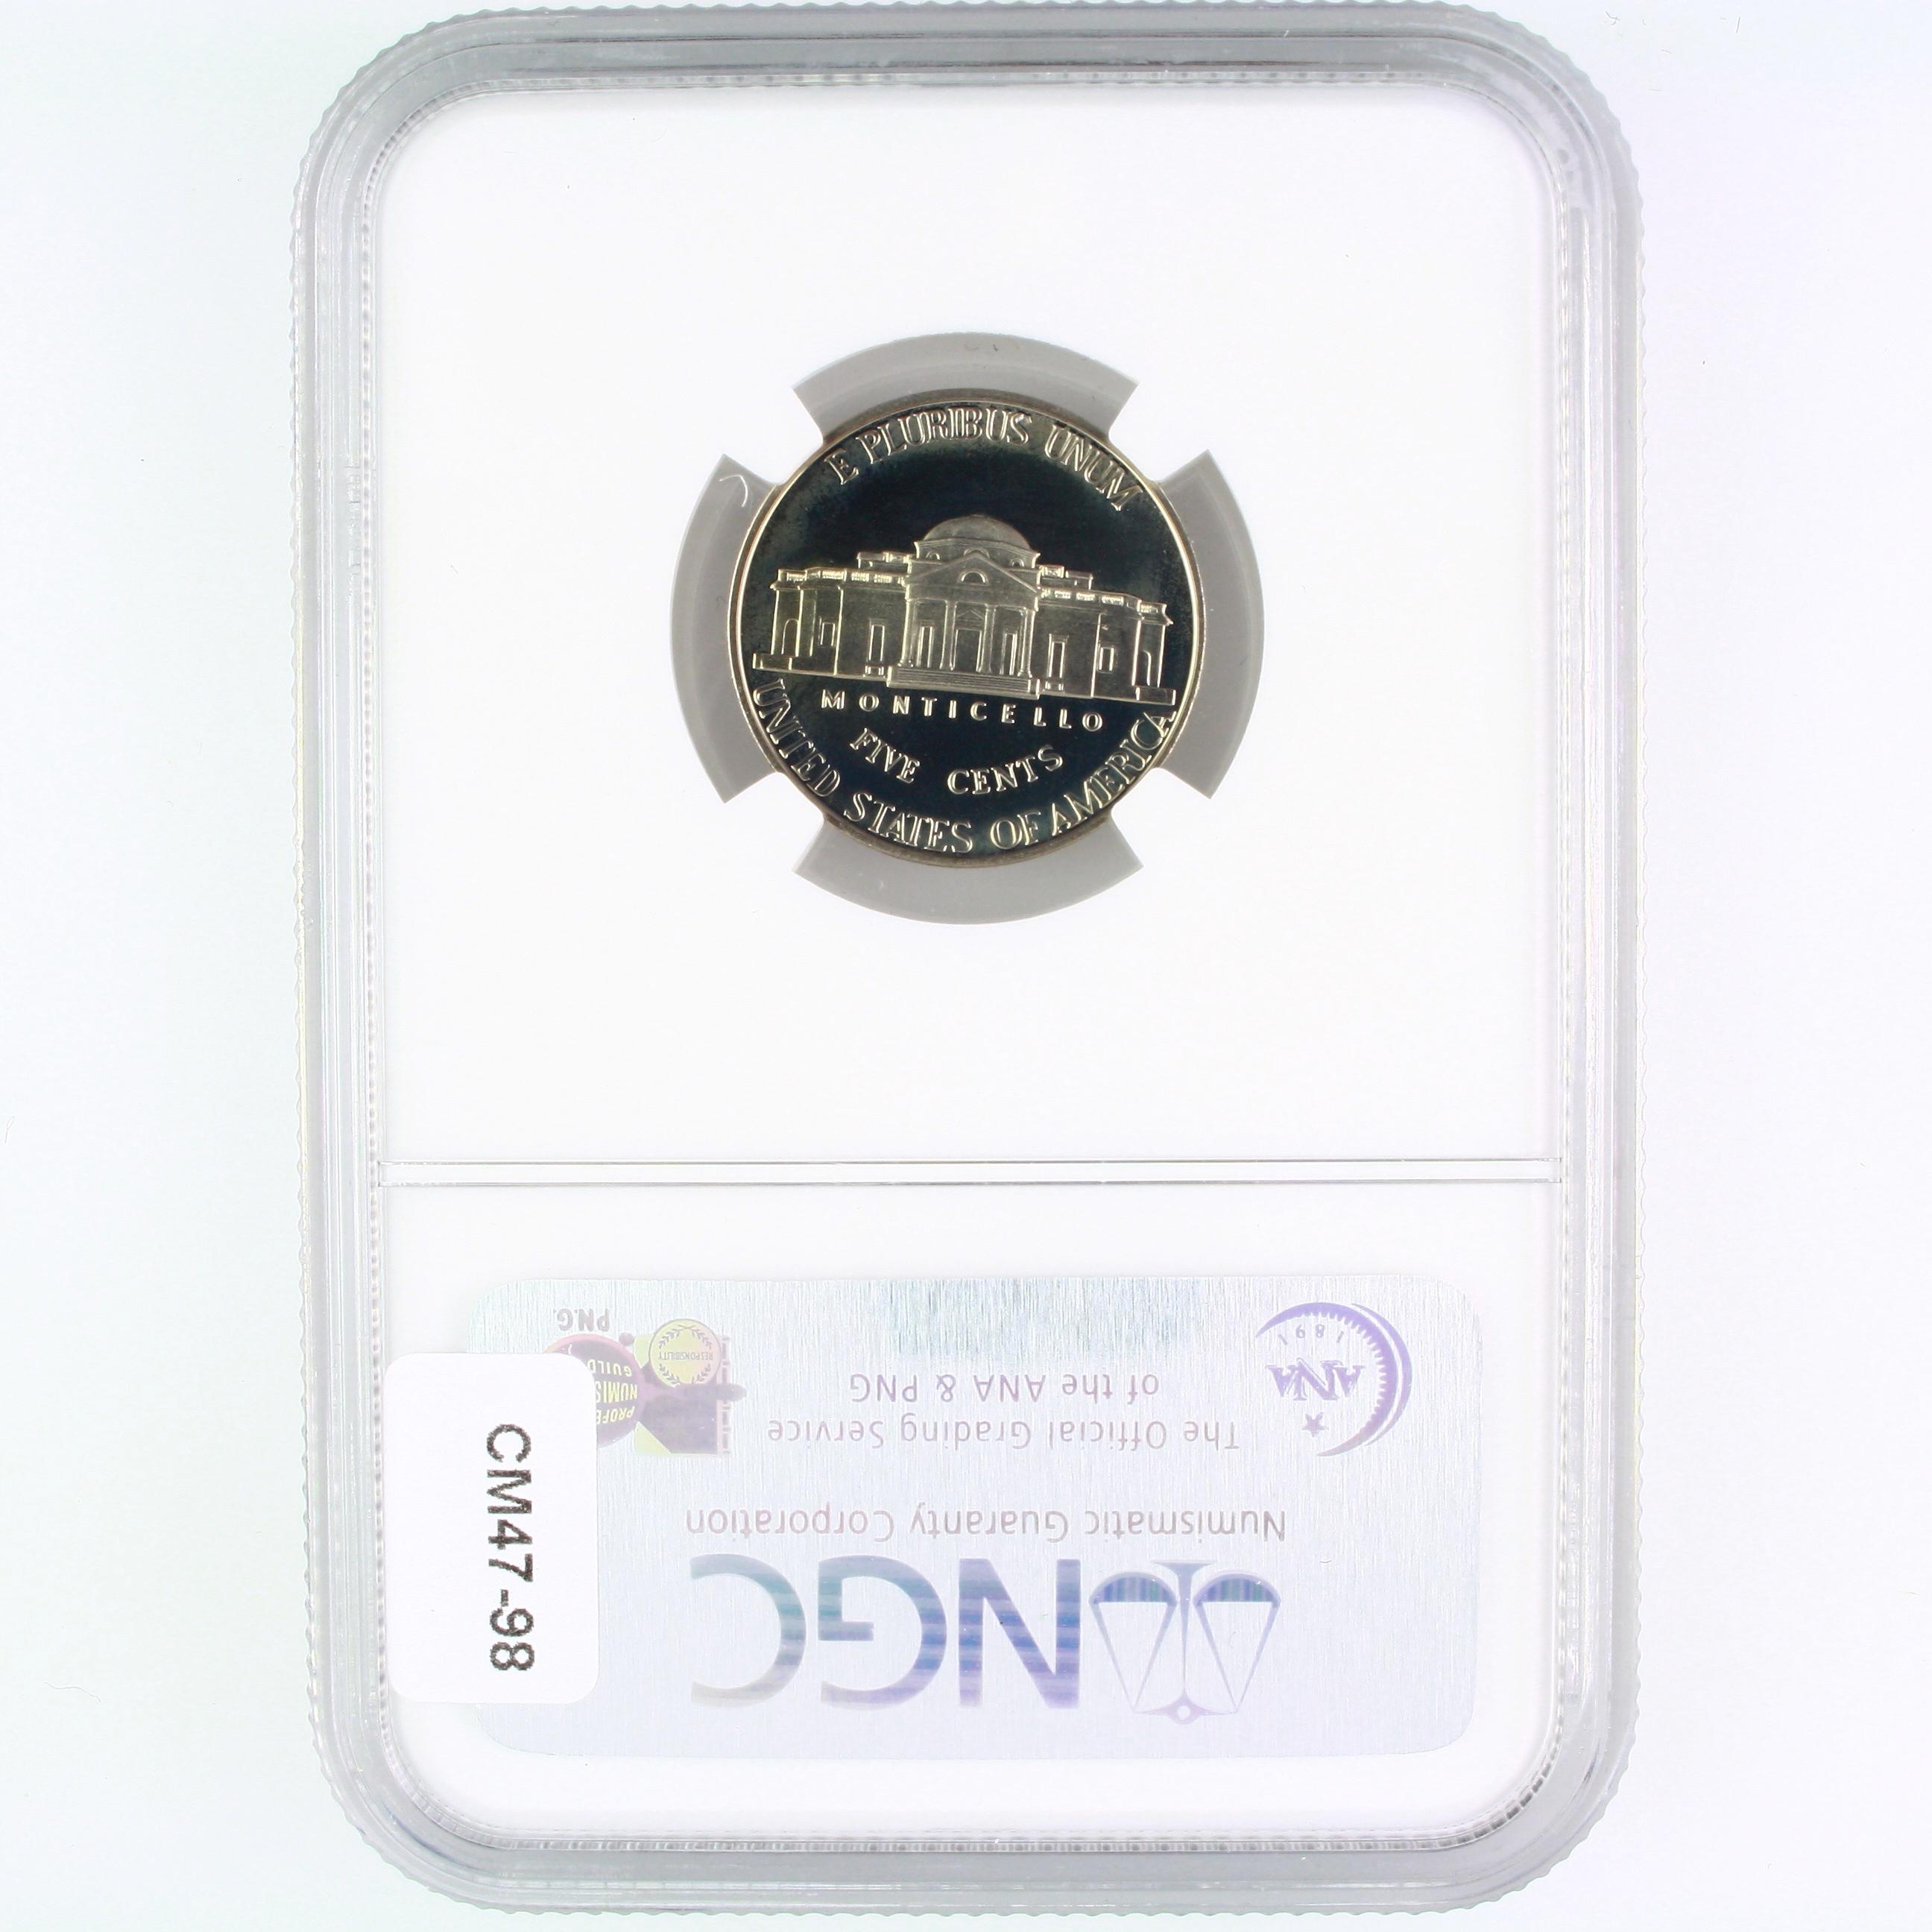 Certified 2001-S proof U.S. Jefferson nickel